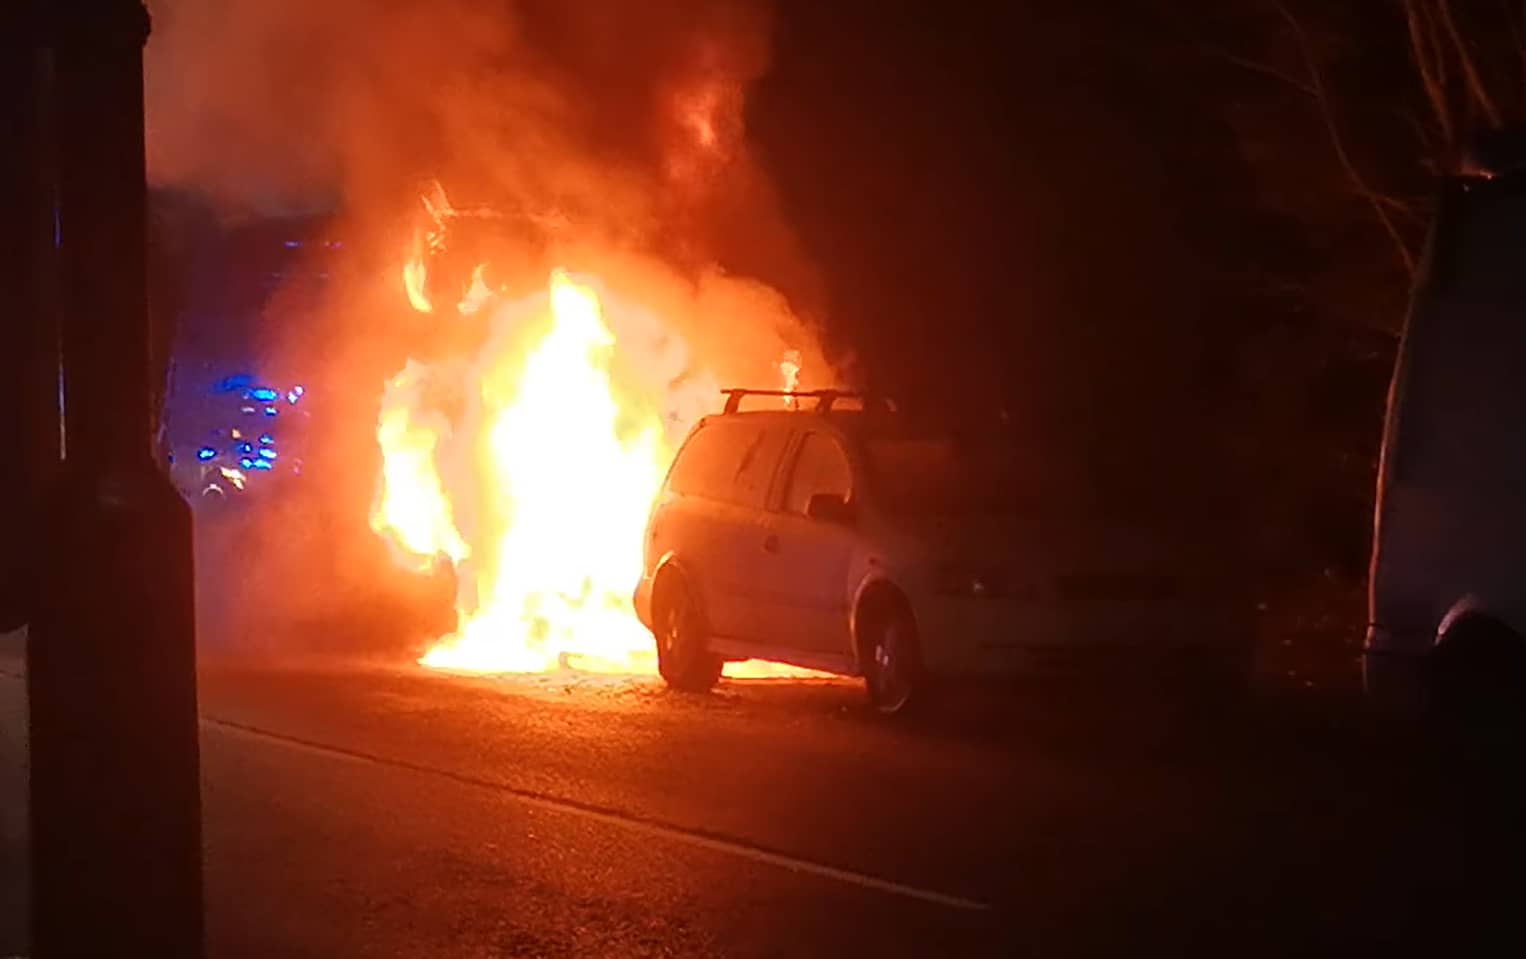 Van on fire in East Cowes taken by John Cattle